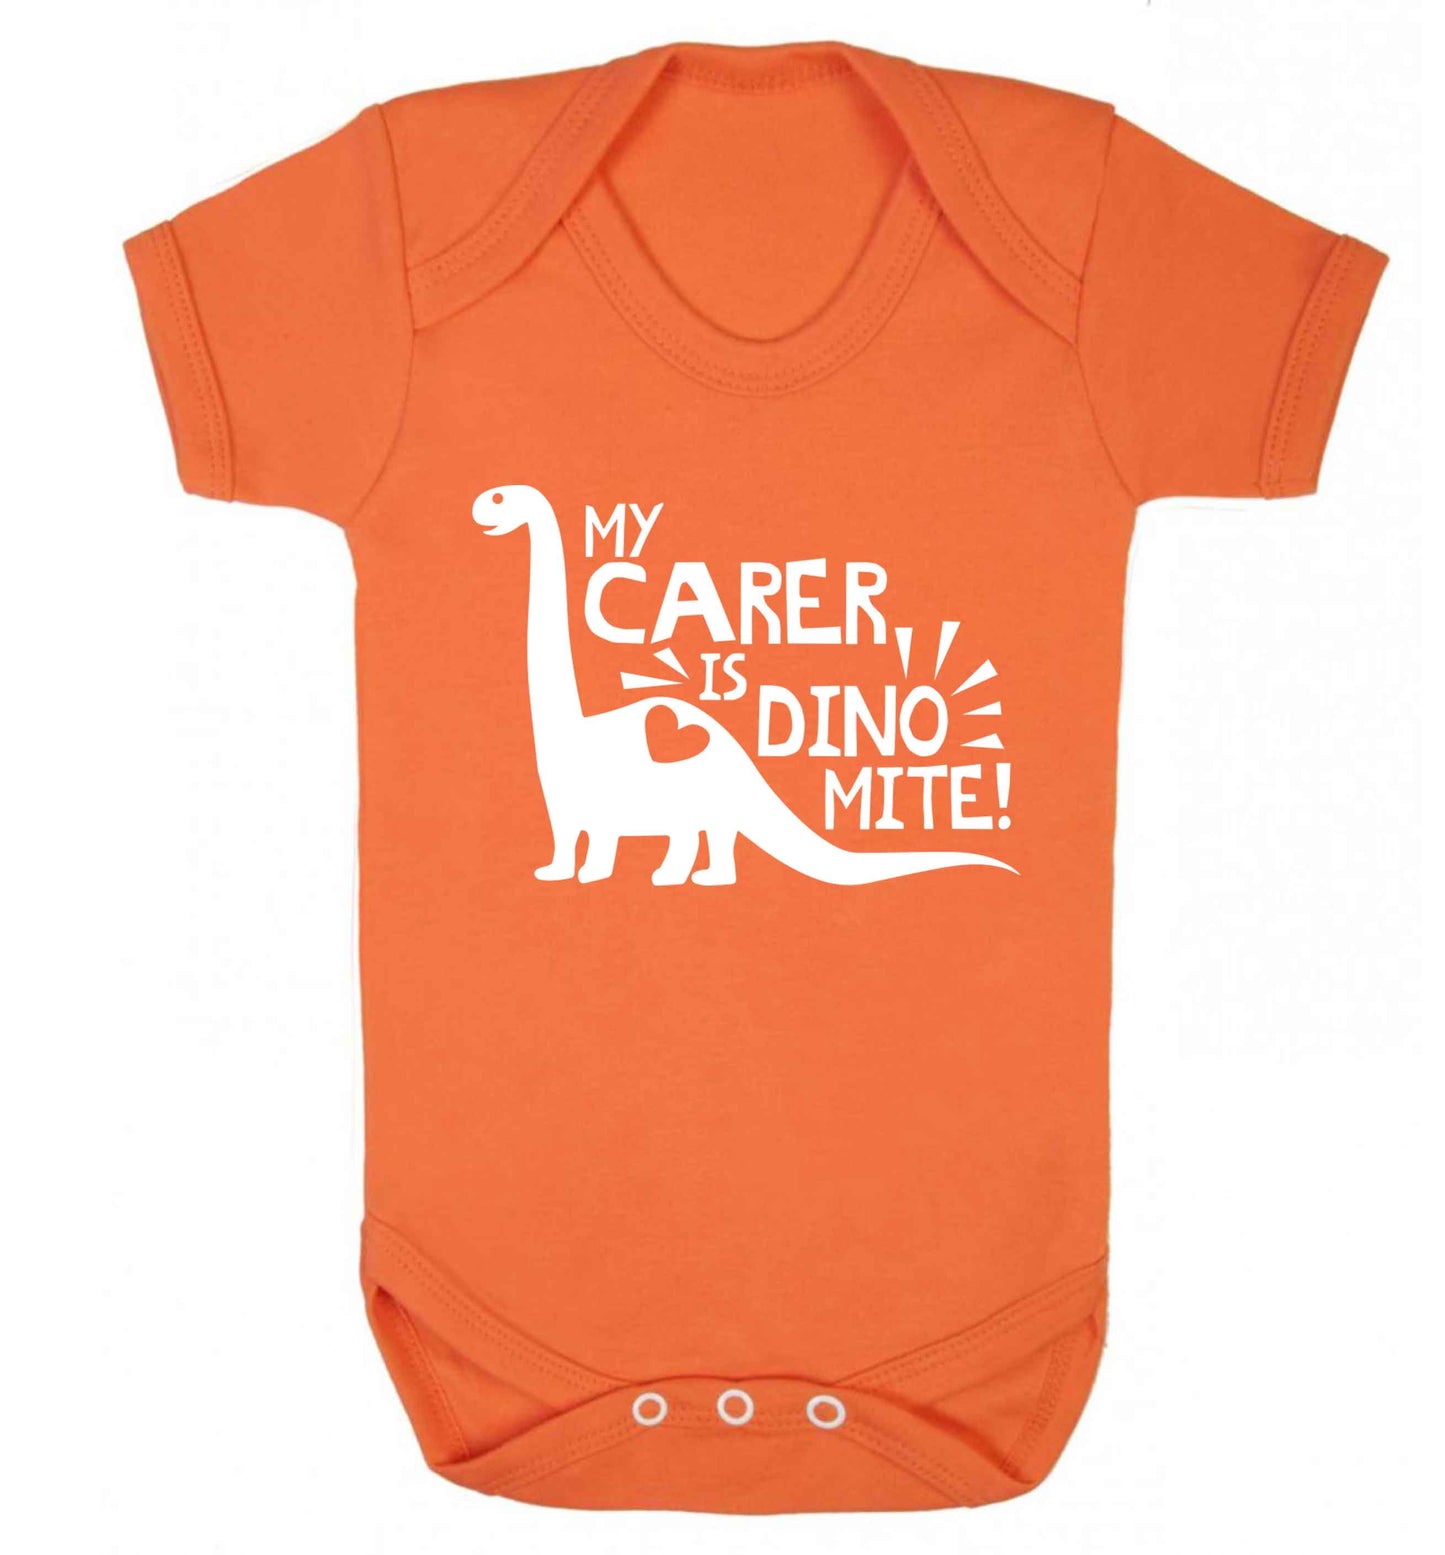 My carer is dinomite! Baby Vest orange 18-24 months